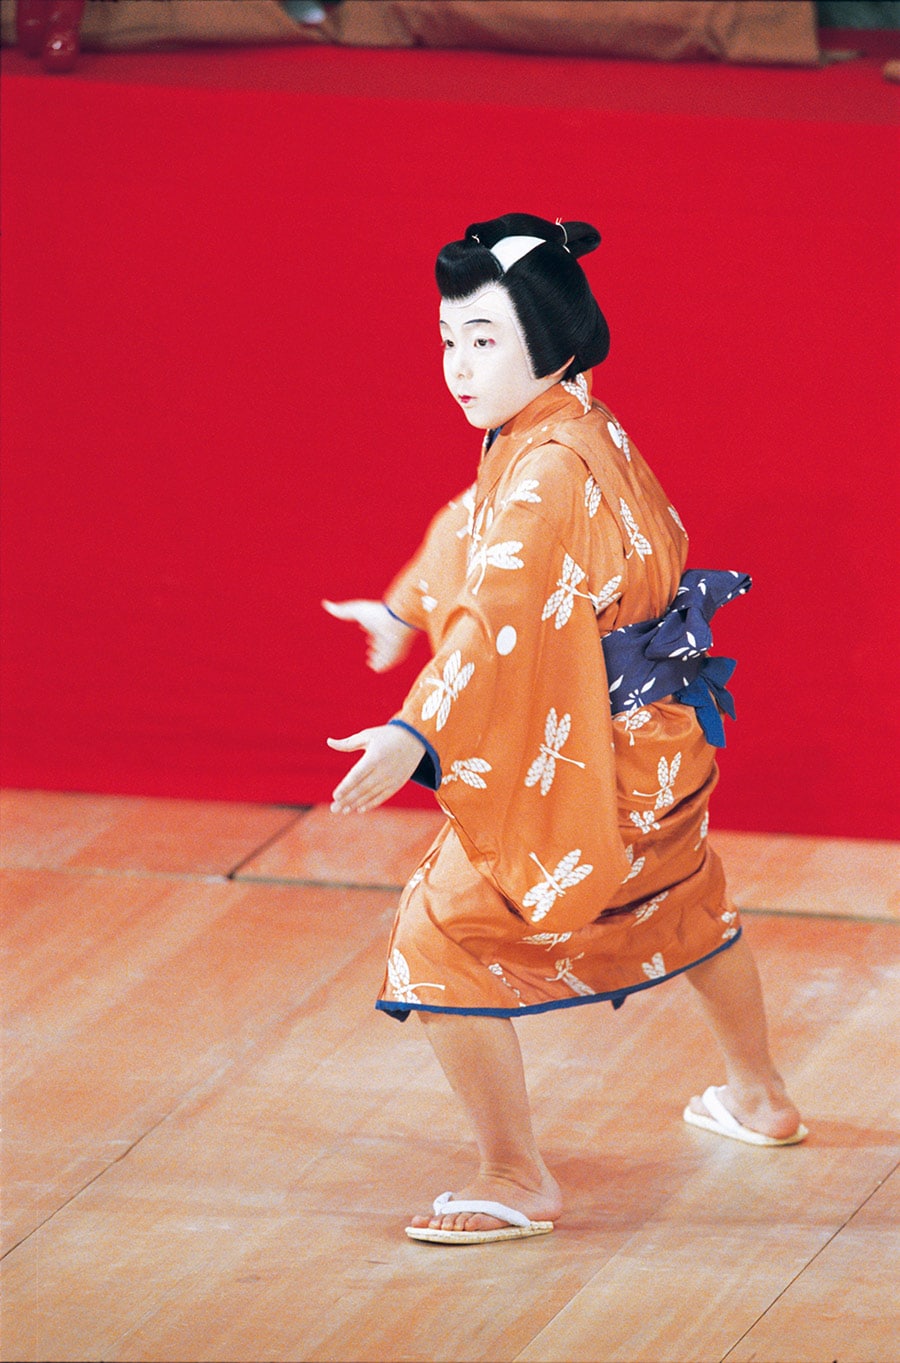 梅玉さんの部屋子となり中村梅丸を名乗った。当時9歳。2006年4月歌舞伎座『関八州繋馬・小蝶蜘』里の子 竹吉 ©松竹。